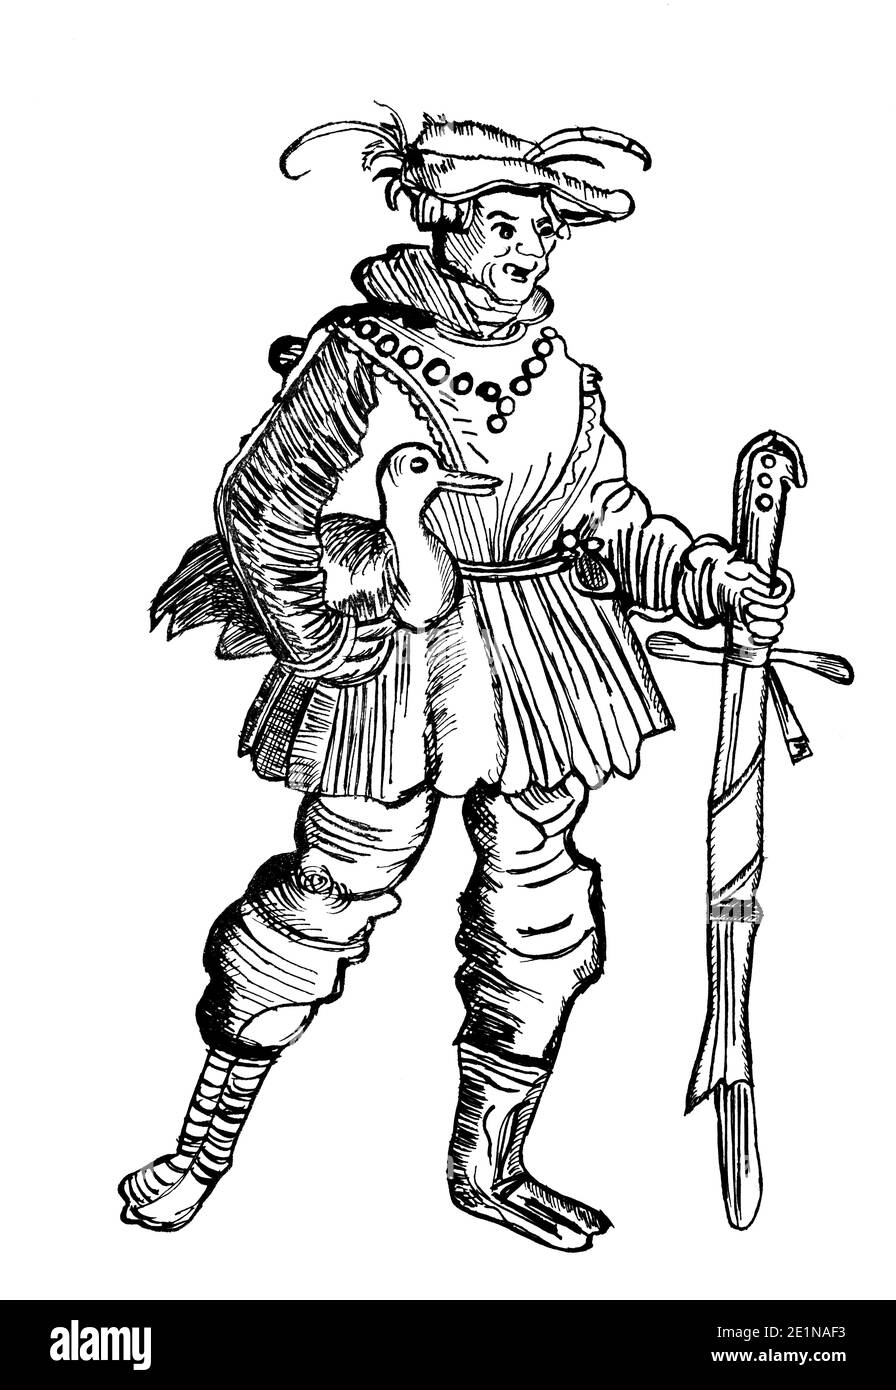 Un dessin noir et blanc d'un homme médiéval qui tient une épée et un oiseau dans ses mains Banque D'Images